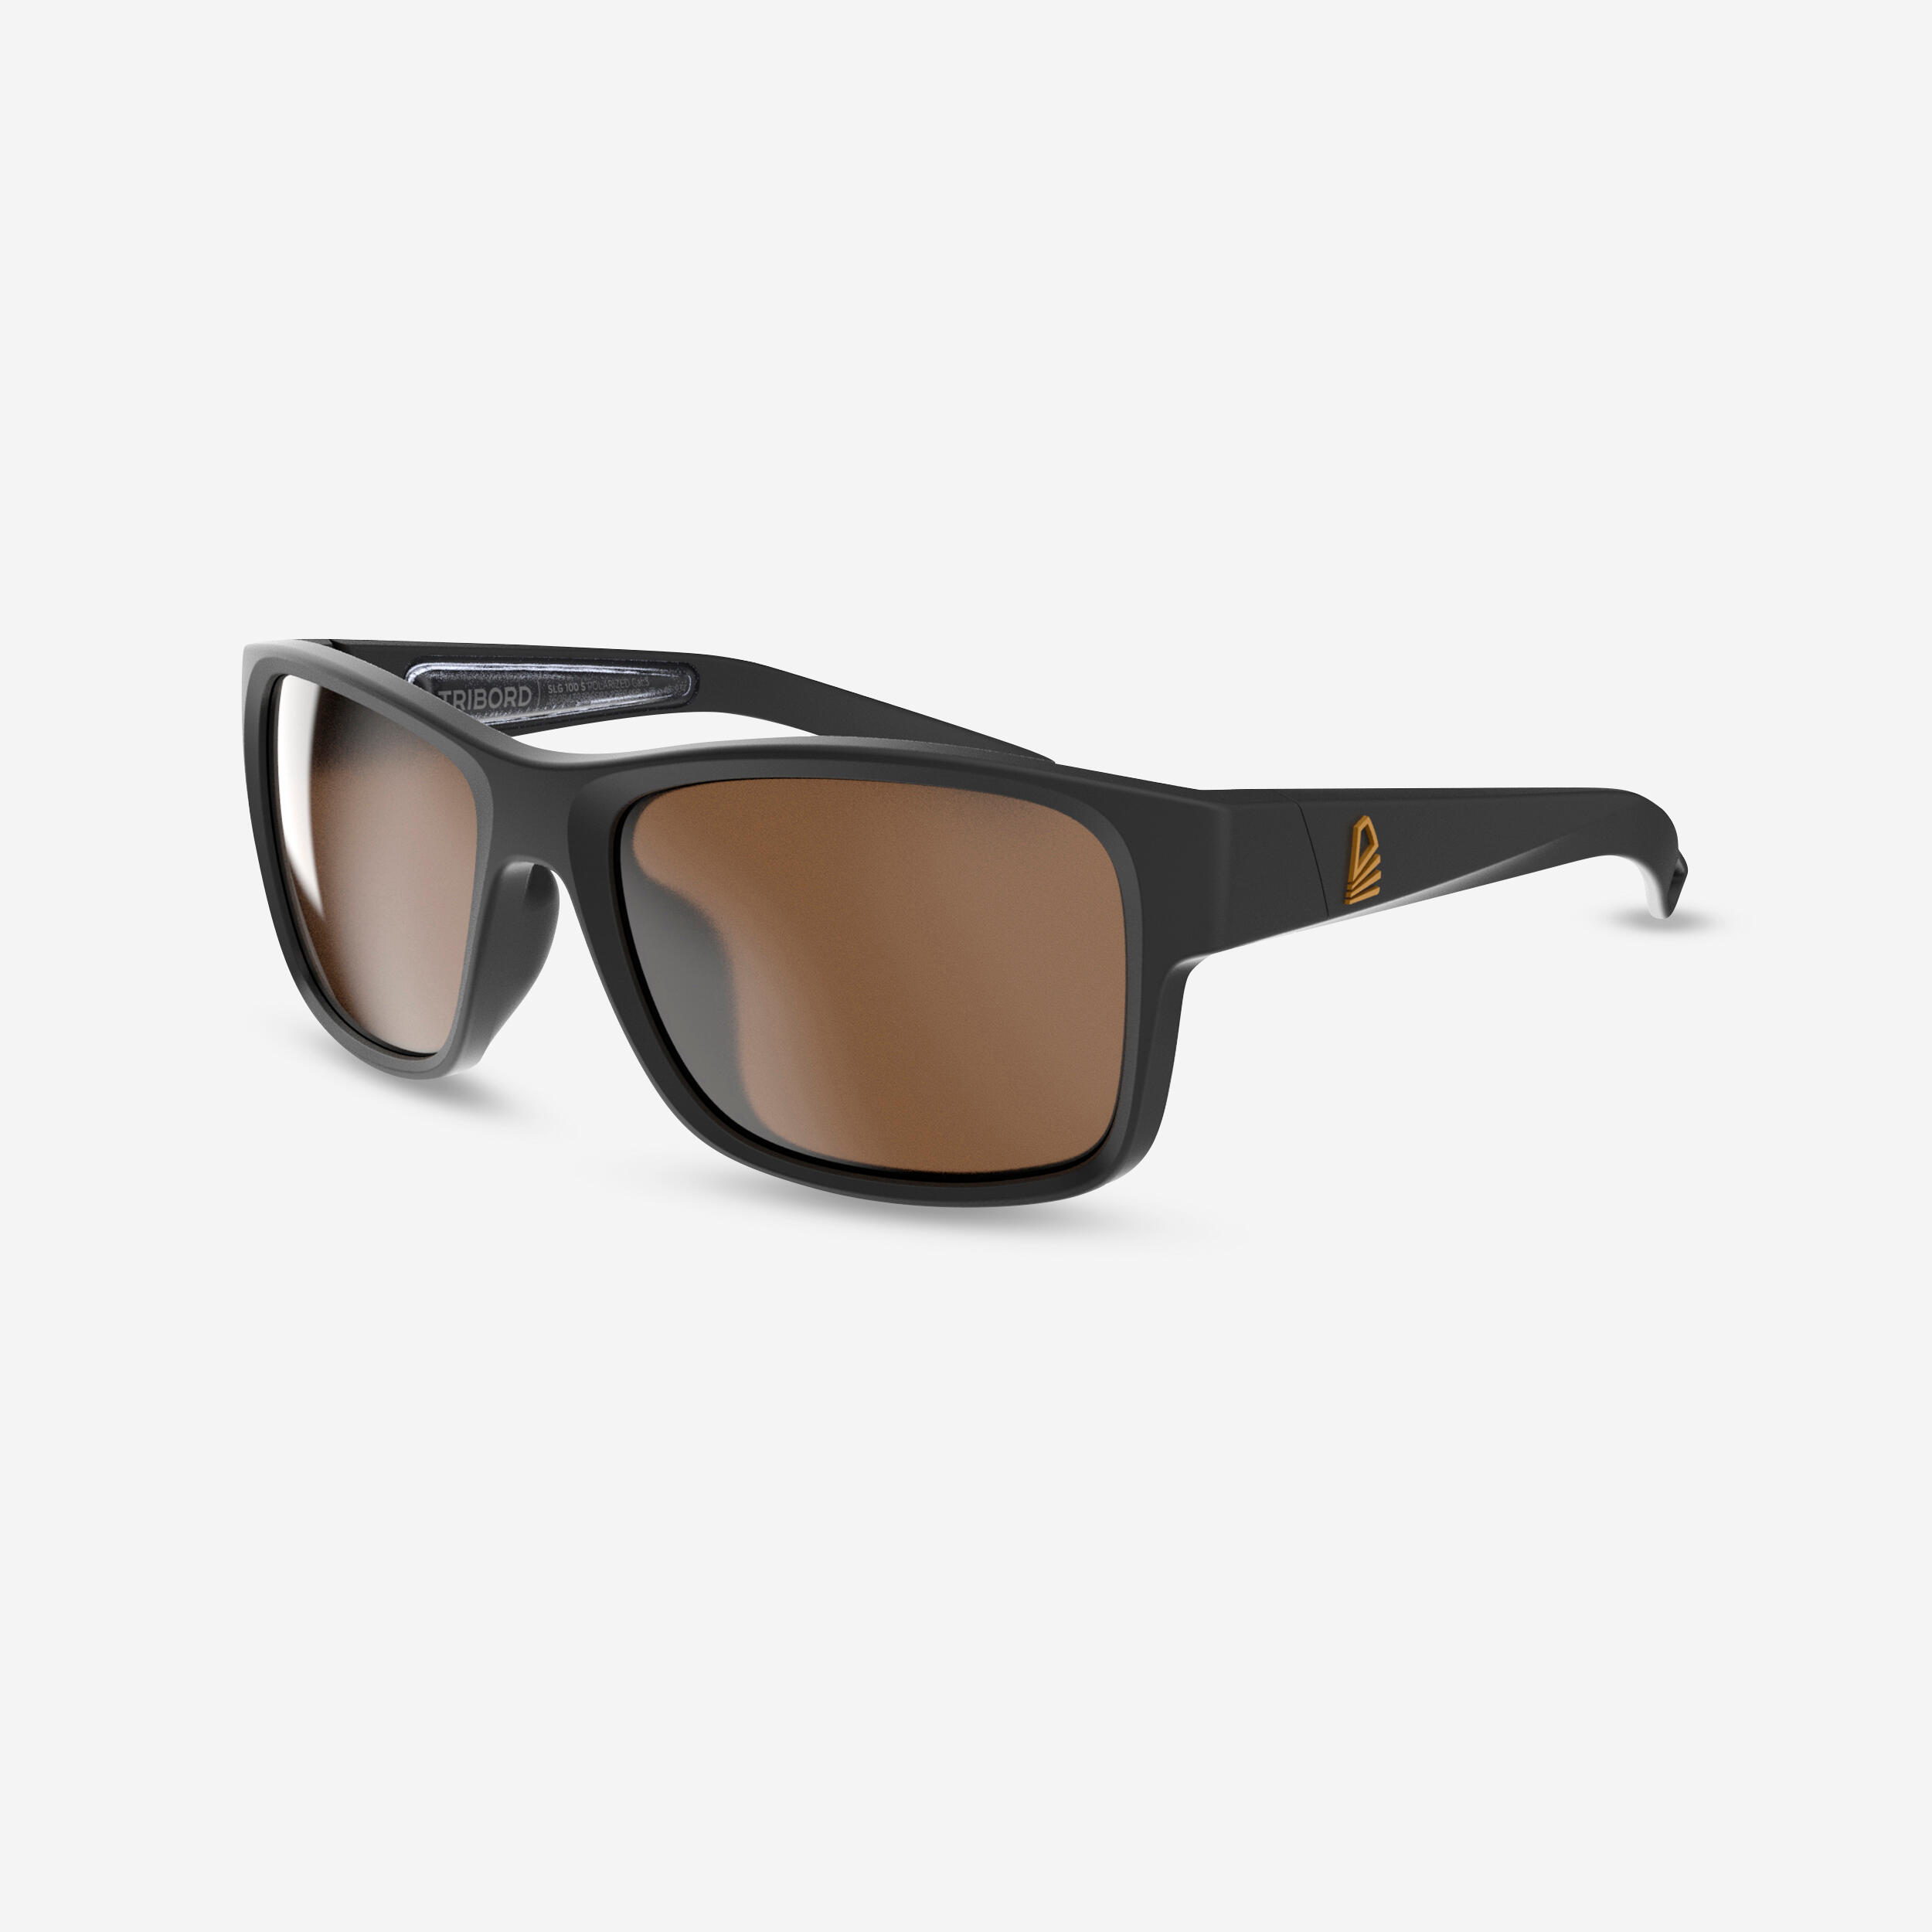 Sailing Floating Polarised Sunglasses SAILING 100 Size S Black 9/9